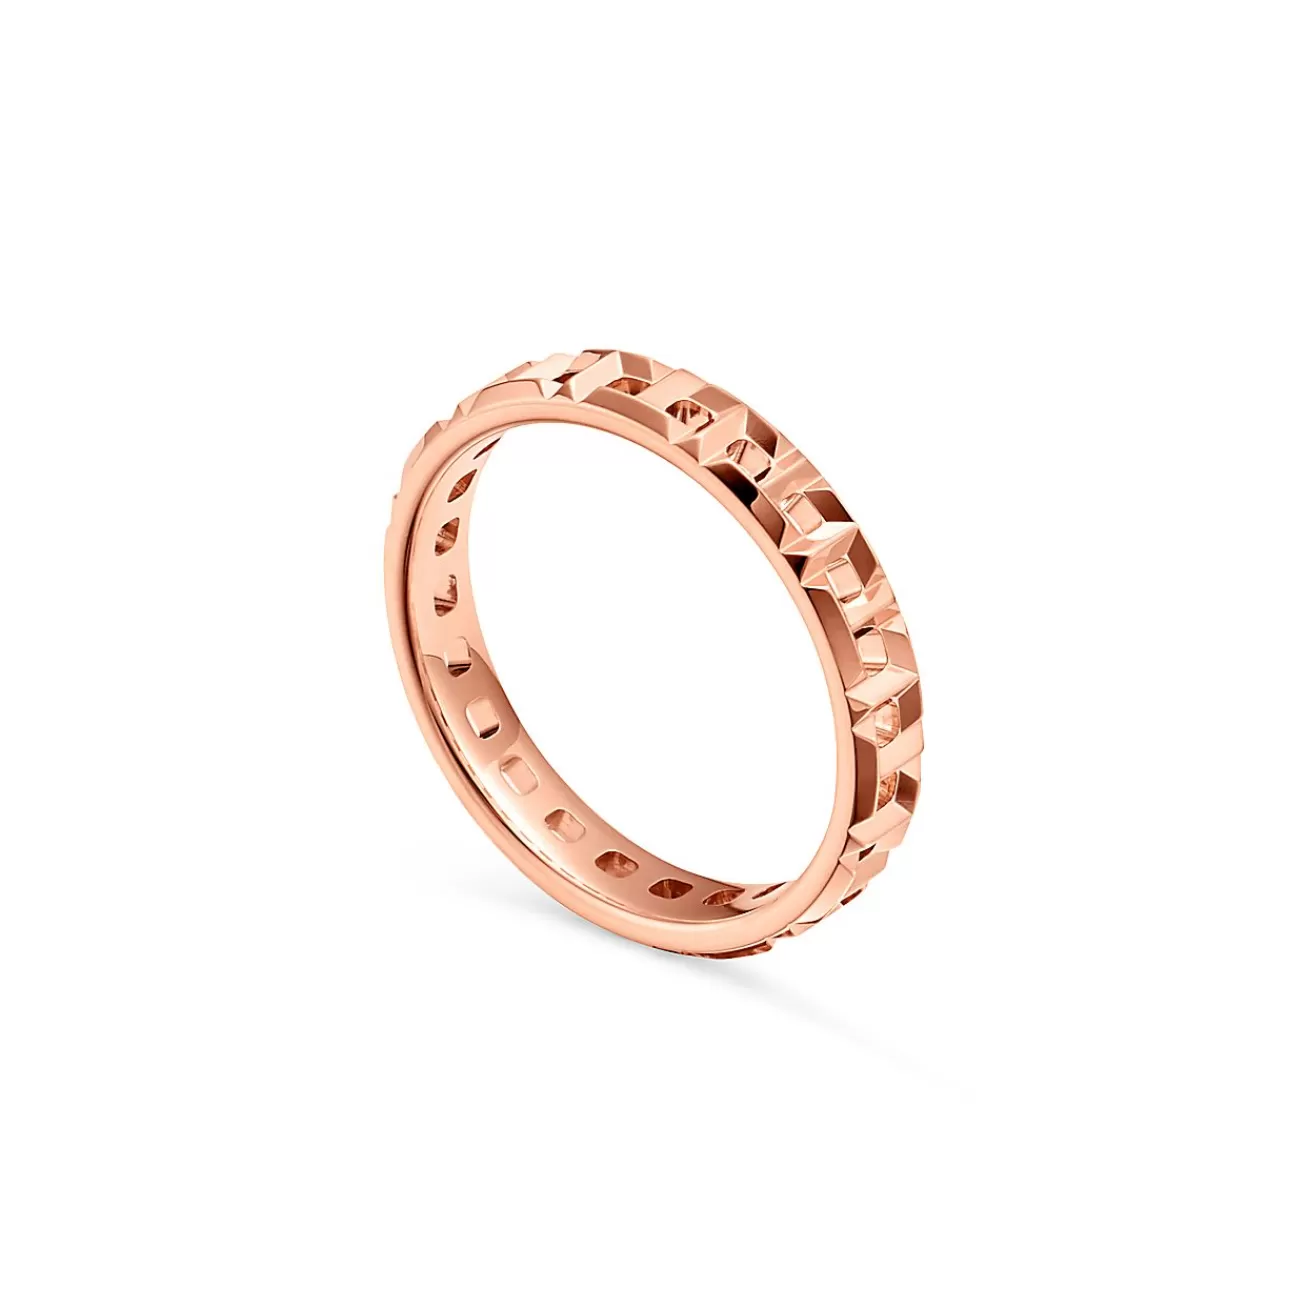 Tiffany & Co. Tiffany T True narrow ring in 18k rose gold, 3.5 mm wide. | ^Women Rings | Men's Jewelry